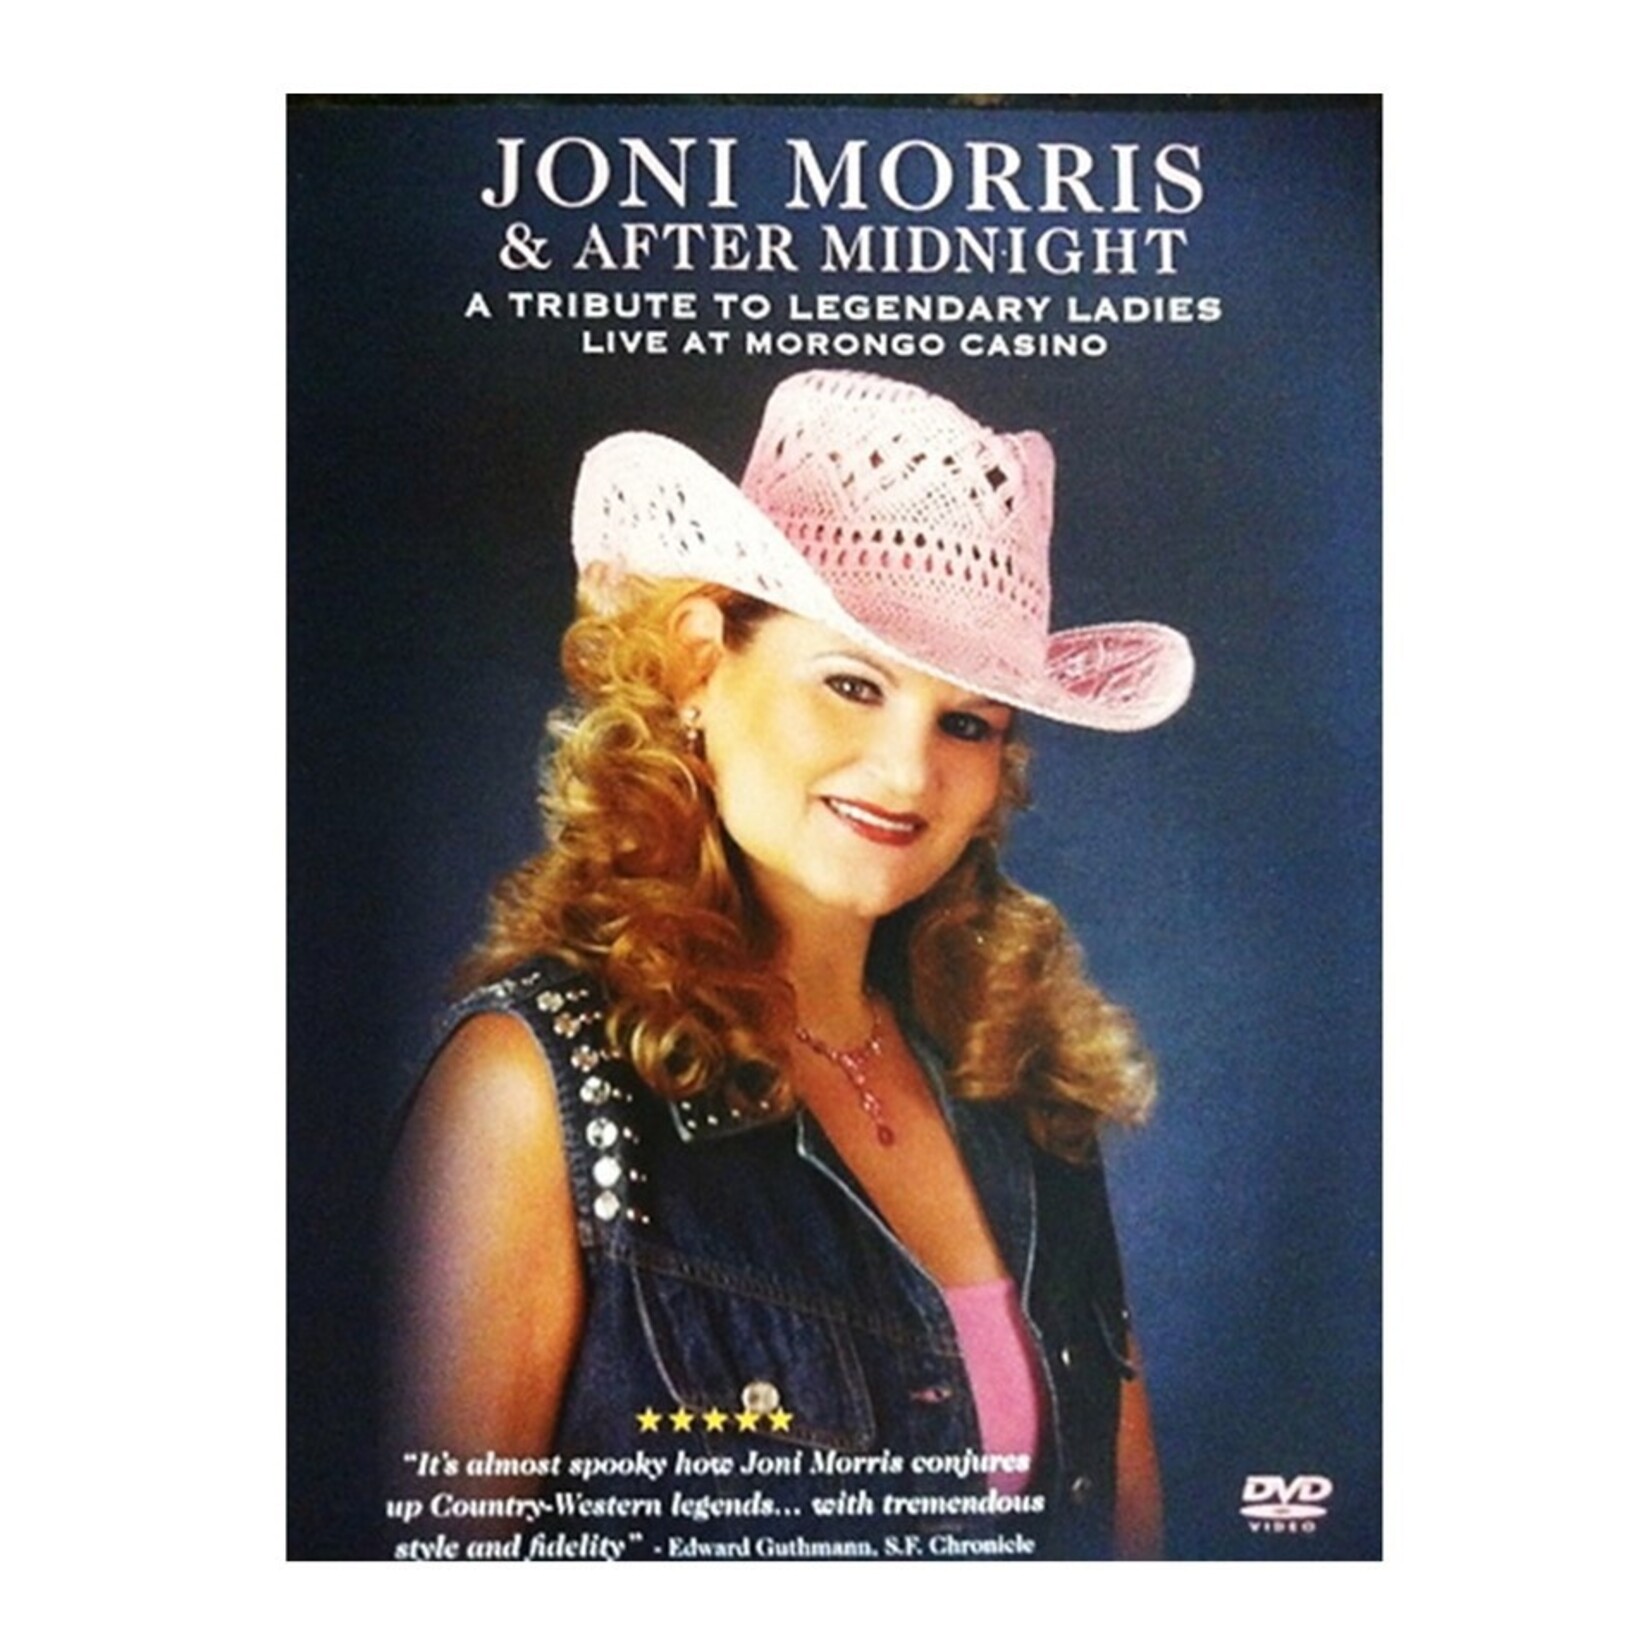 *JOM Joni Morris & After Midnight LIVE DVD